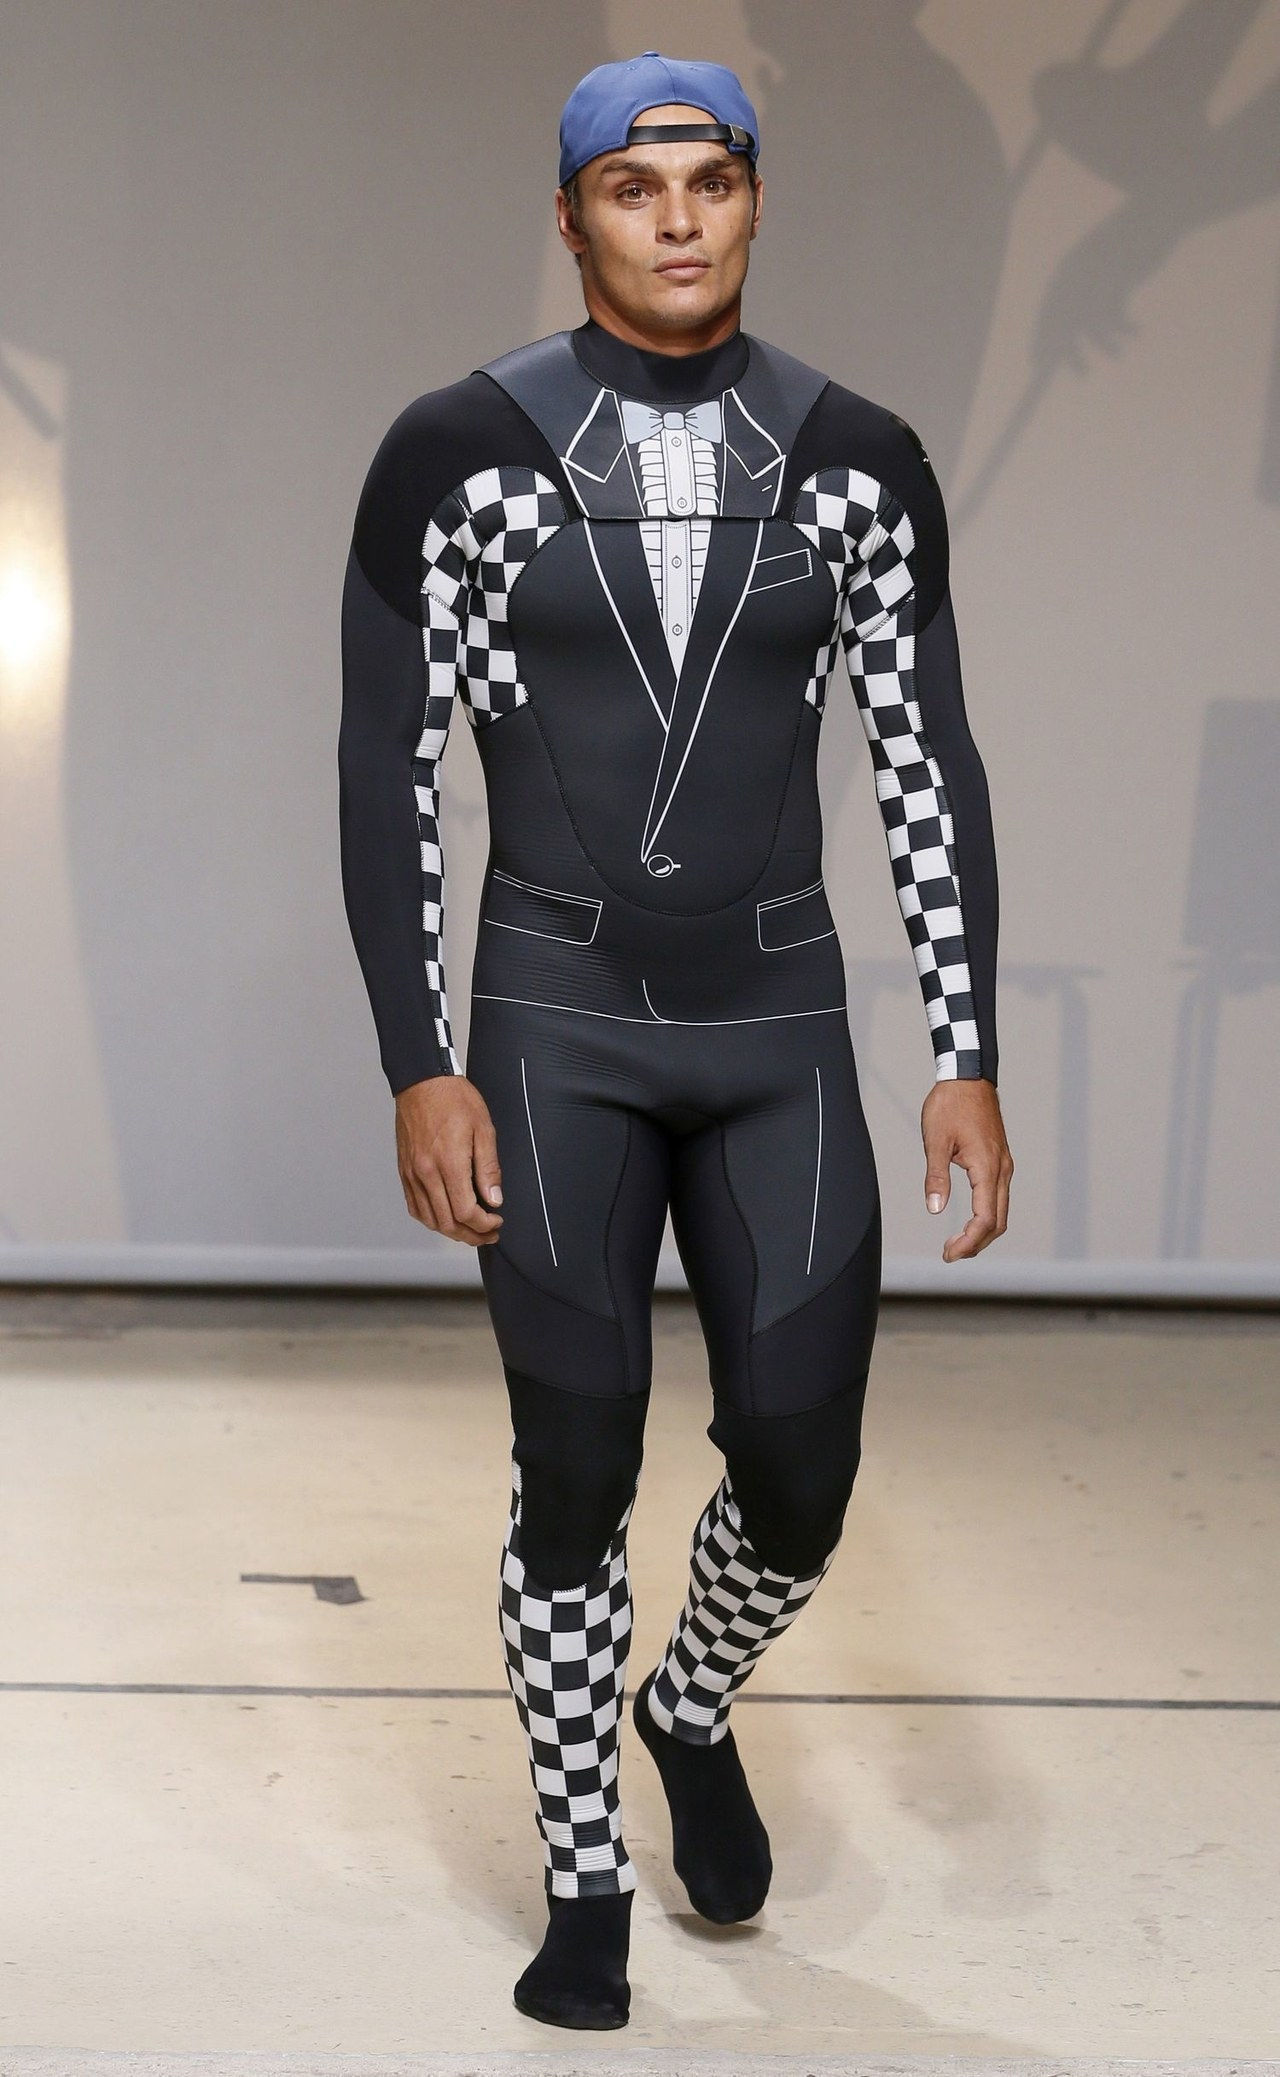 朱利安 david wetsuit tuxedo suit runway